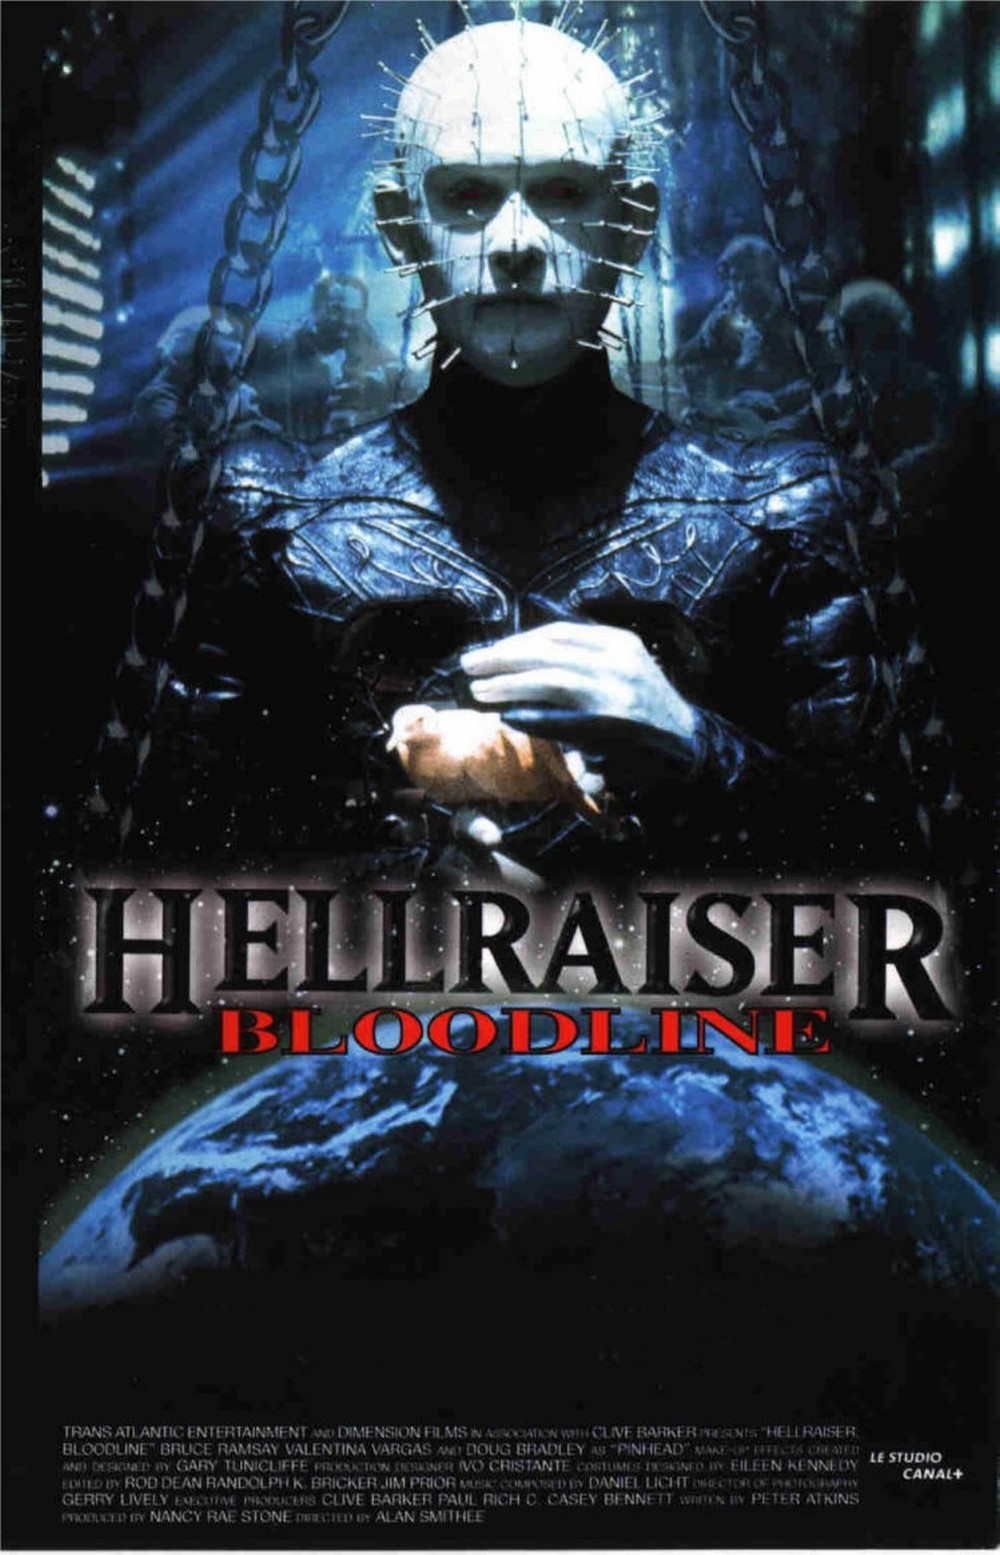 Hellraiser_bloodlines_cover.jpg